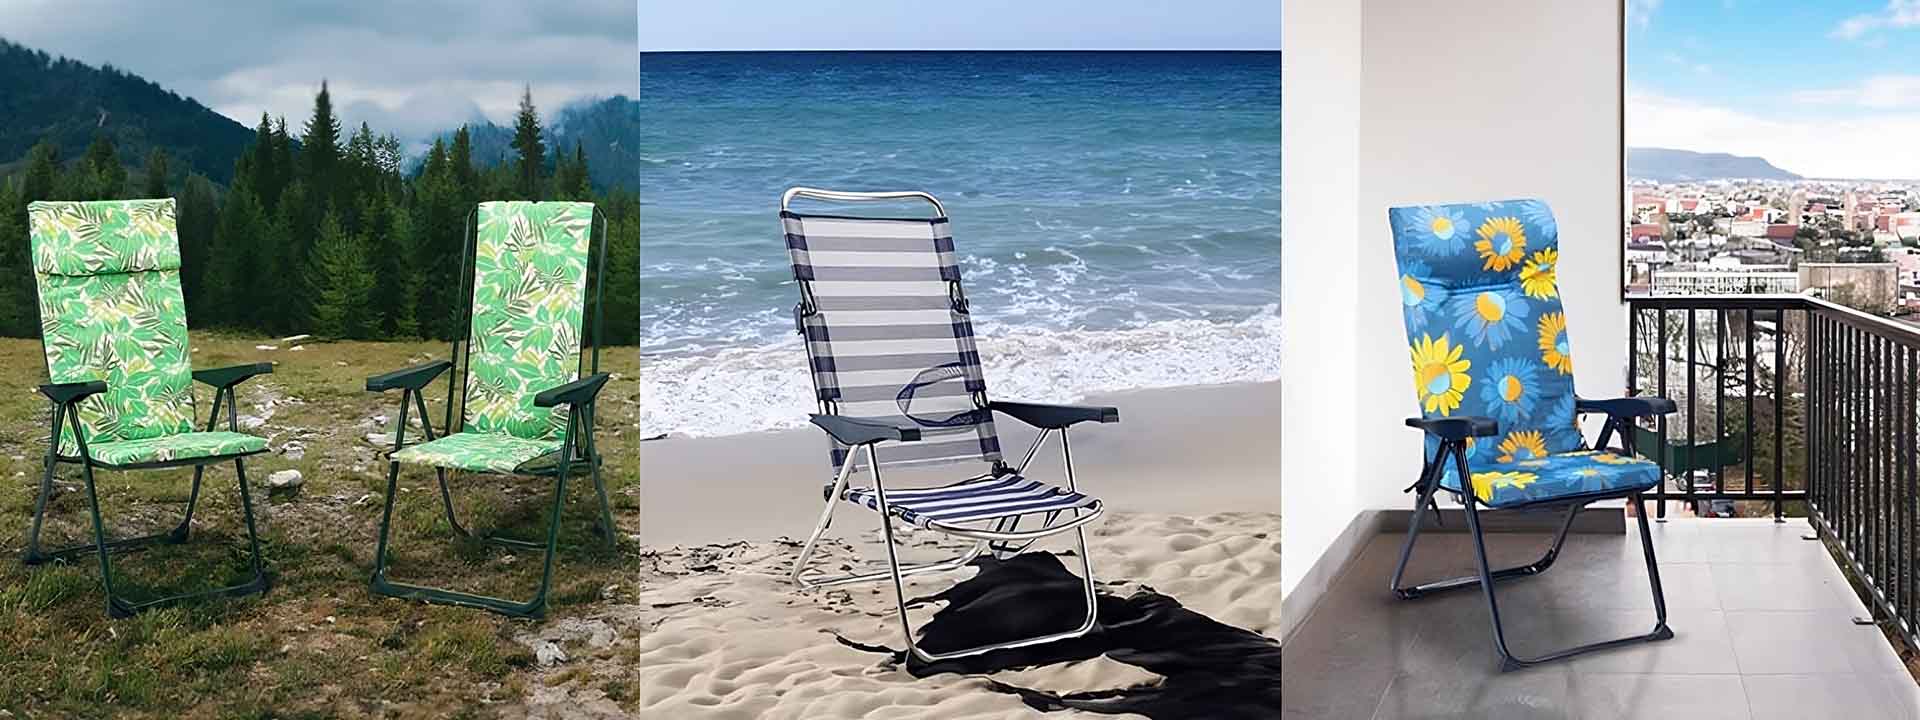 Test de la chaise pliante: préférez-vous la mer, la montagne ou le balcon de votre maison?